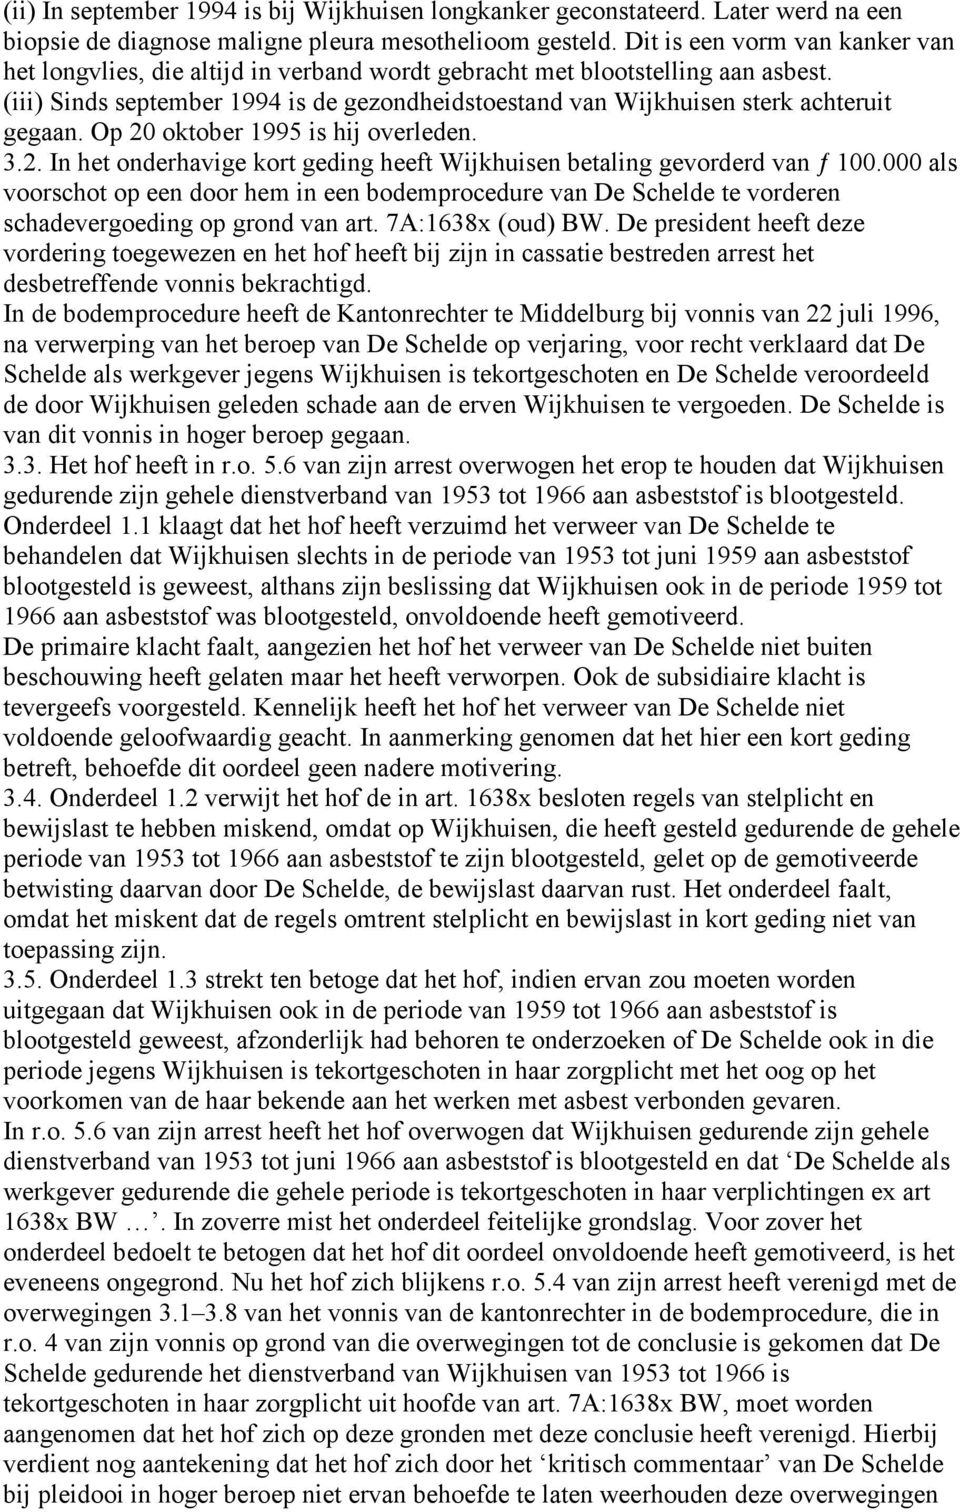 (iii) Sinds september 1994 is de gezondheidstoestand van Wijkhuisen sterk achteruit gegaan. Op 20 oktober 1995 is hij overleden. 3.2. In het onderhavige kort geding heeft Wijkhuisen betaling gevorderd van ƒ 100.